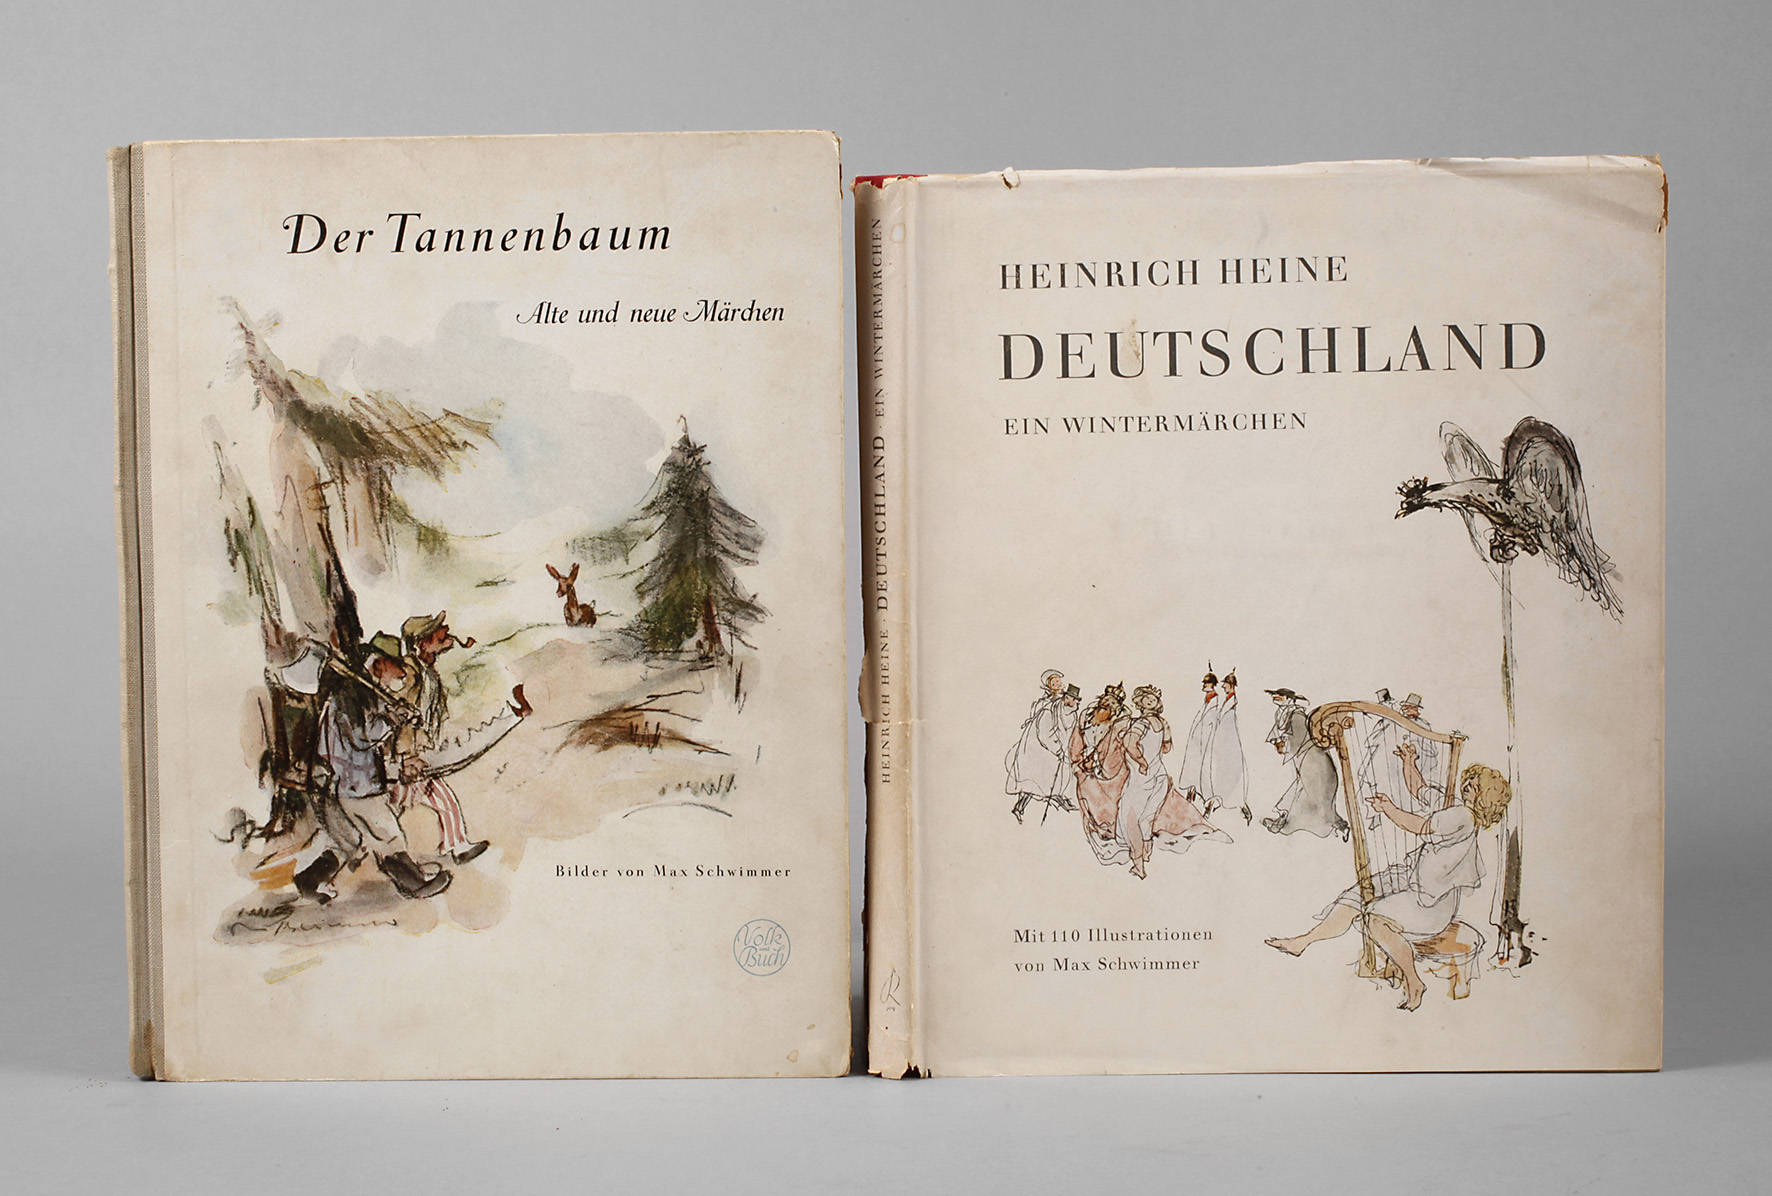 Zwei illustrierte Bände Max Schwimmer mit Signum